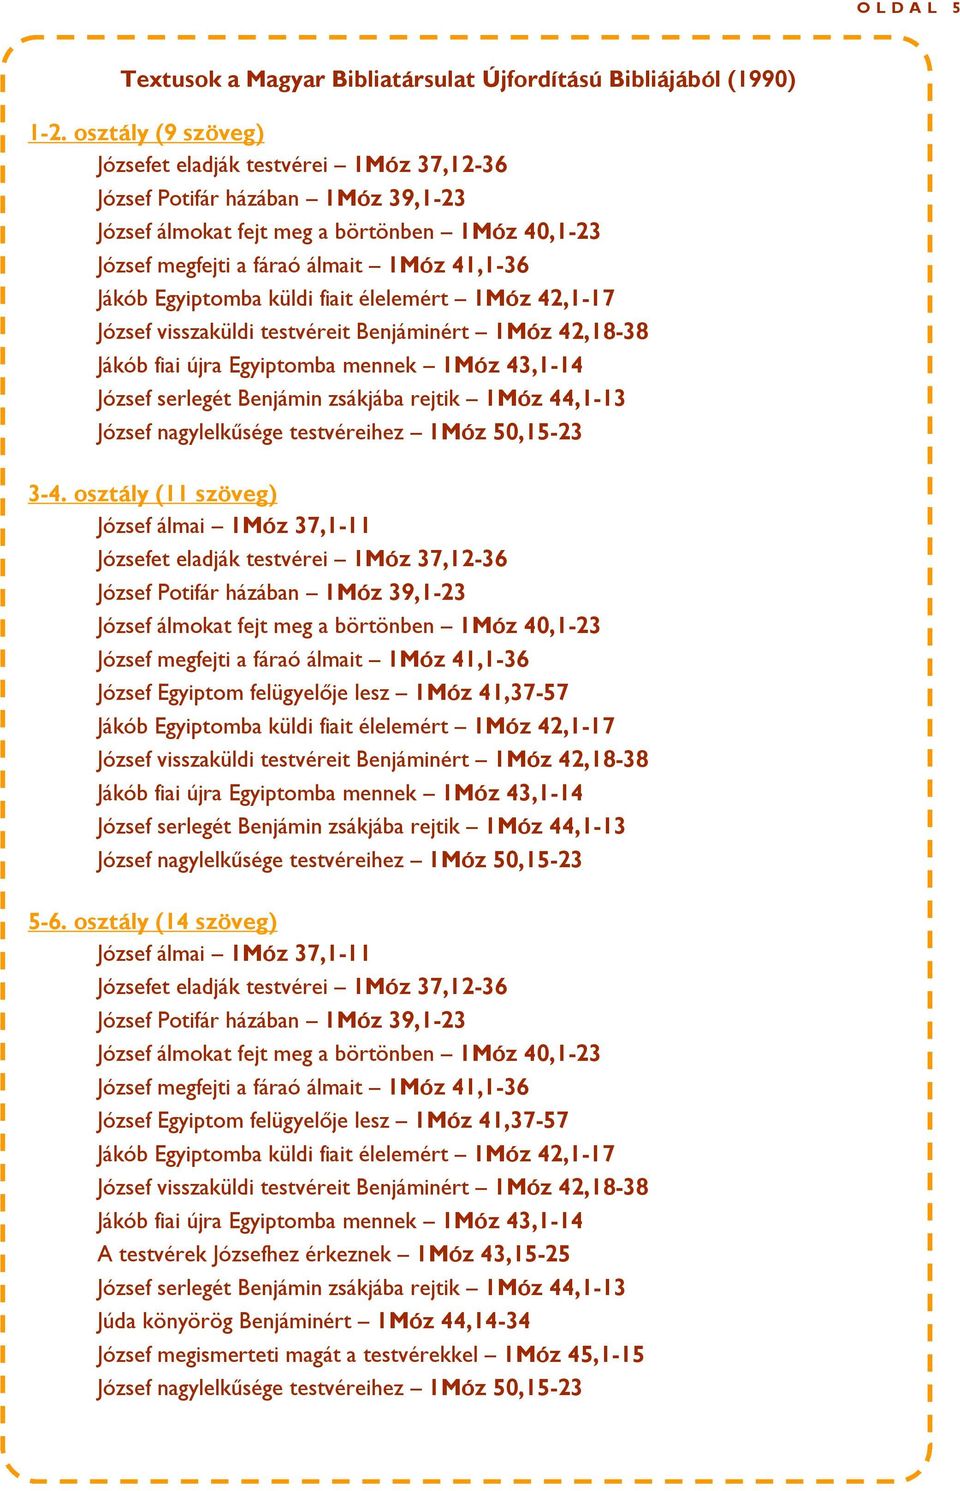 (14 szöveg) József álmai 1Móz 37,1-11 József Egyiptom felügyelője lesz 1Móz 41,37-57 A testvérek Józsefhez